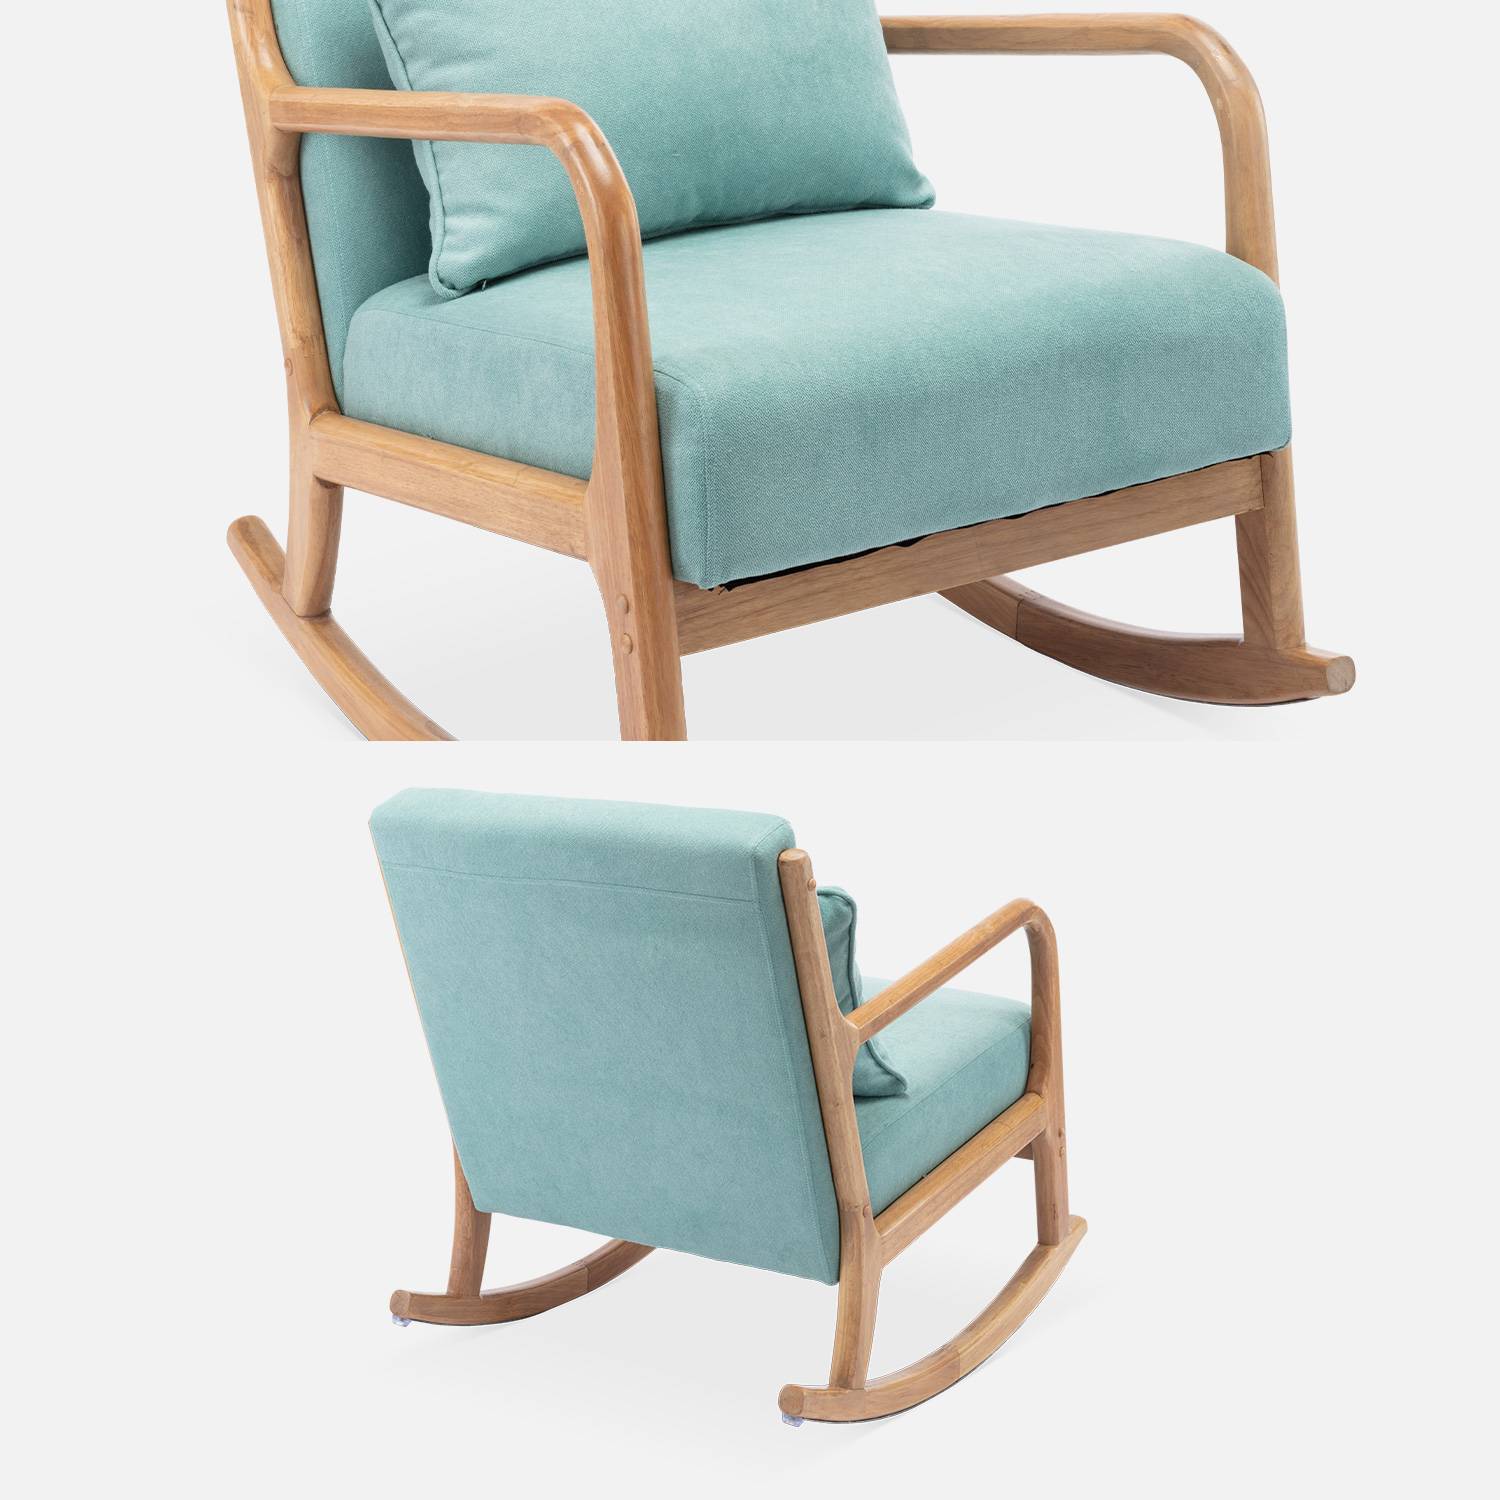 Sedia a dondolo di design in legno e tessuto, 1 posto, sedia a dondolo scandinava, verde acqua Photo7